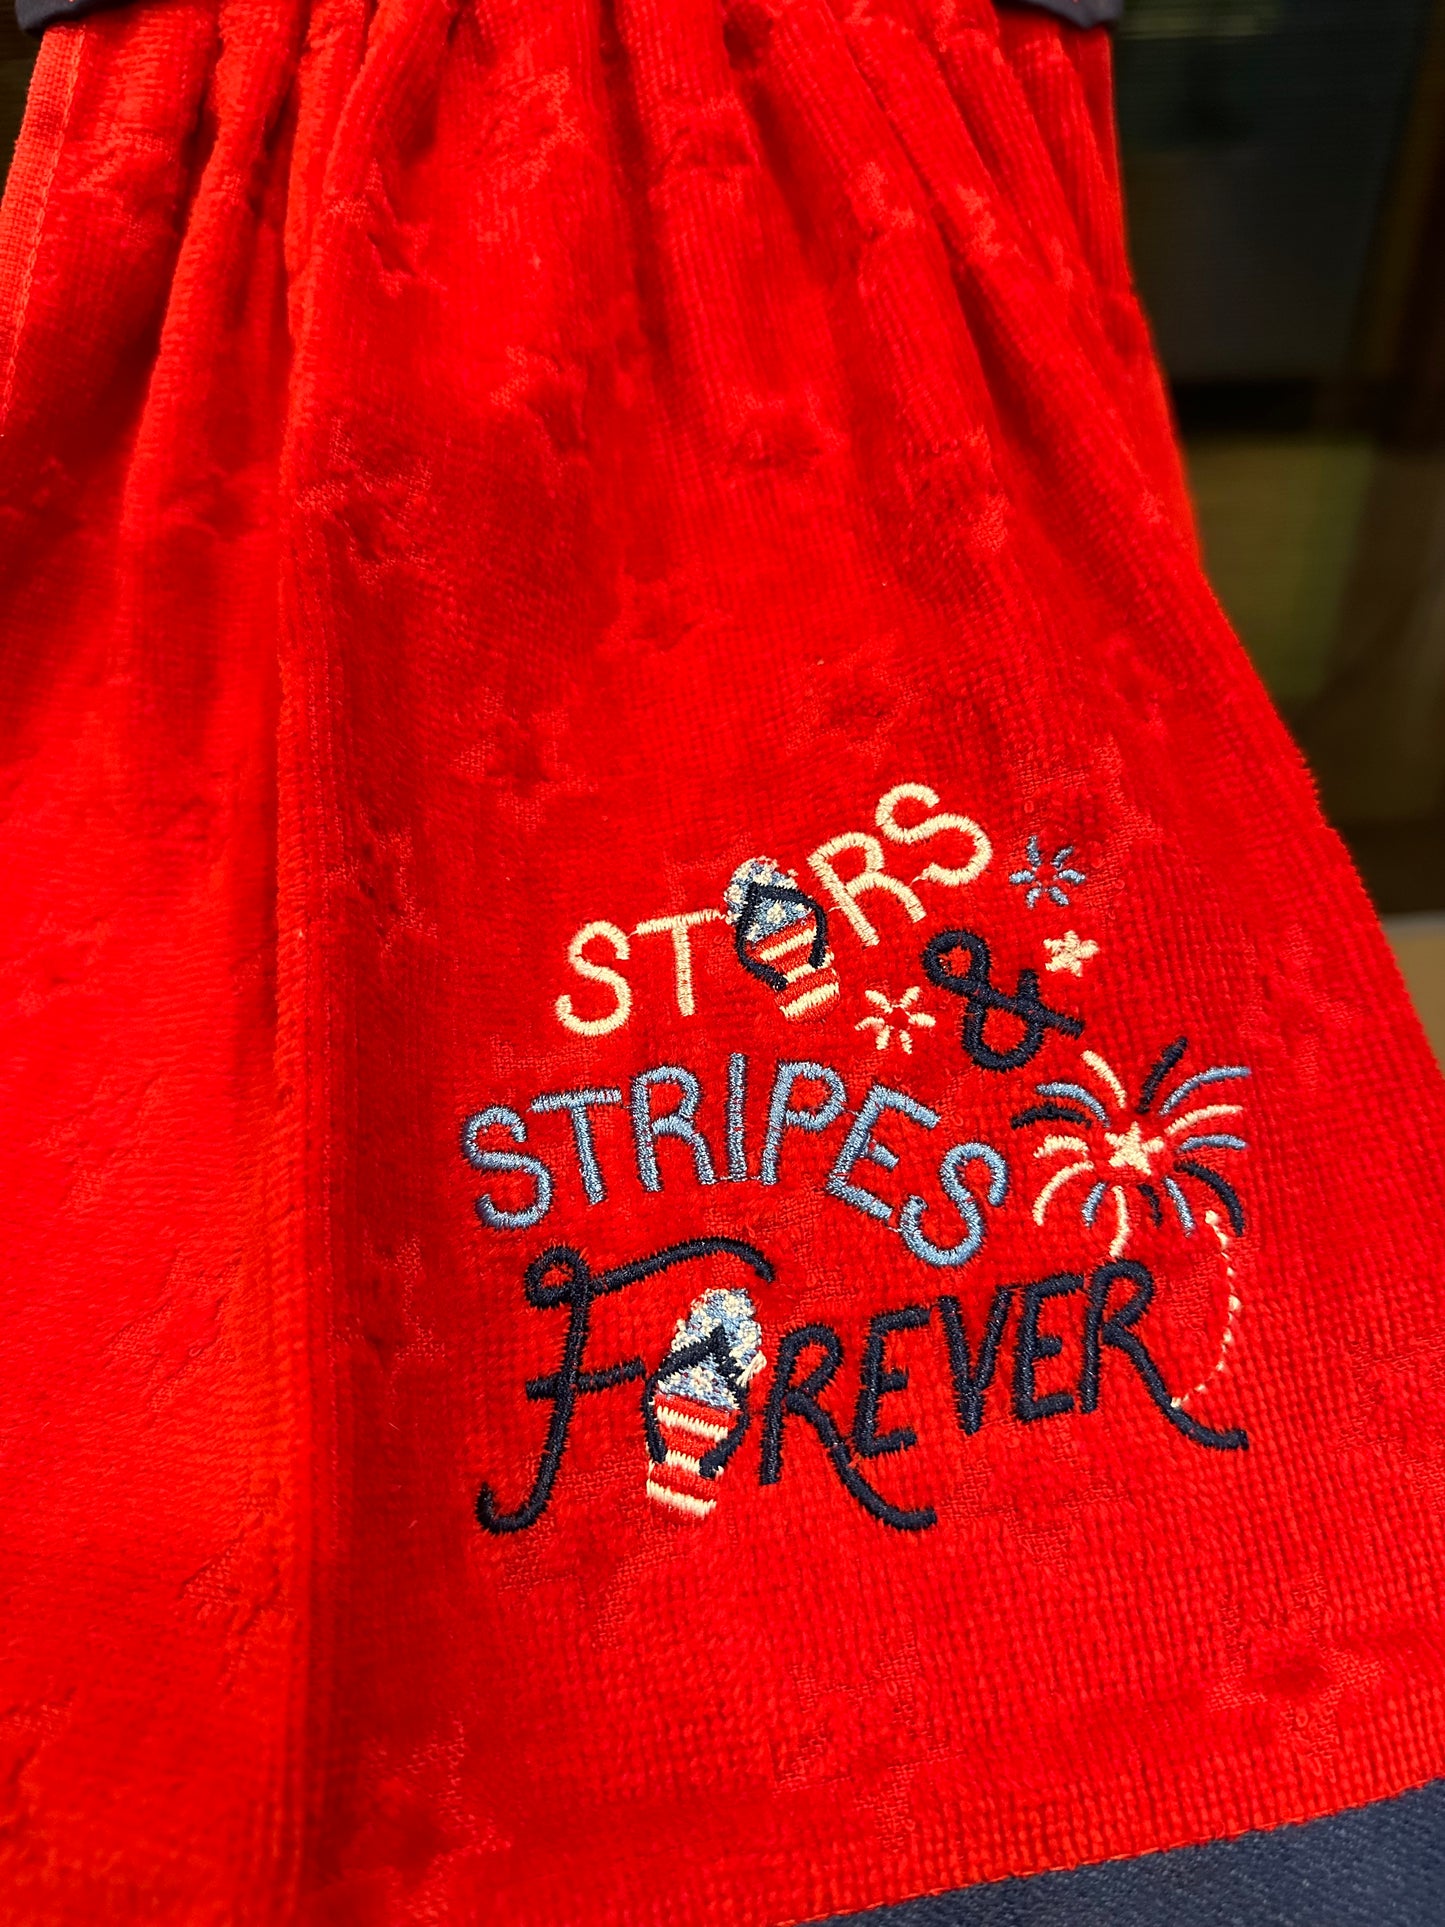 Stars & Stripes Forever Towel